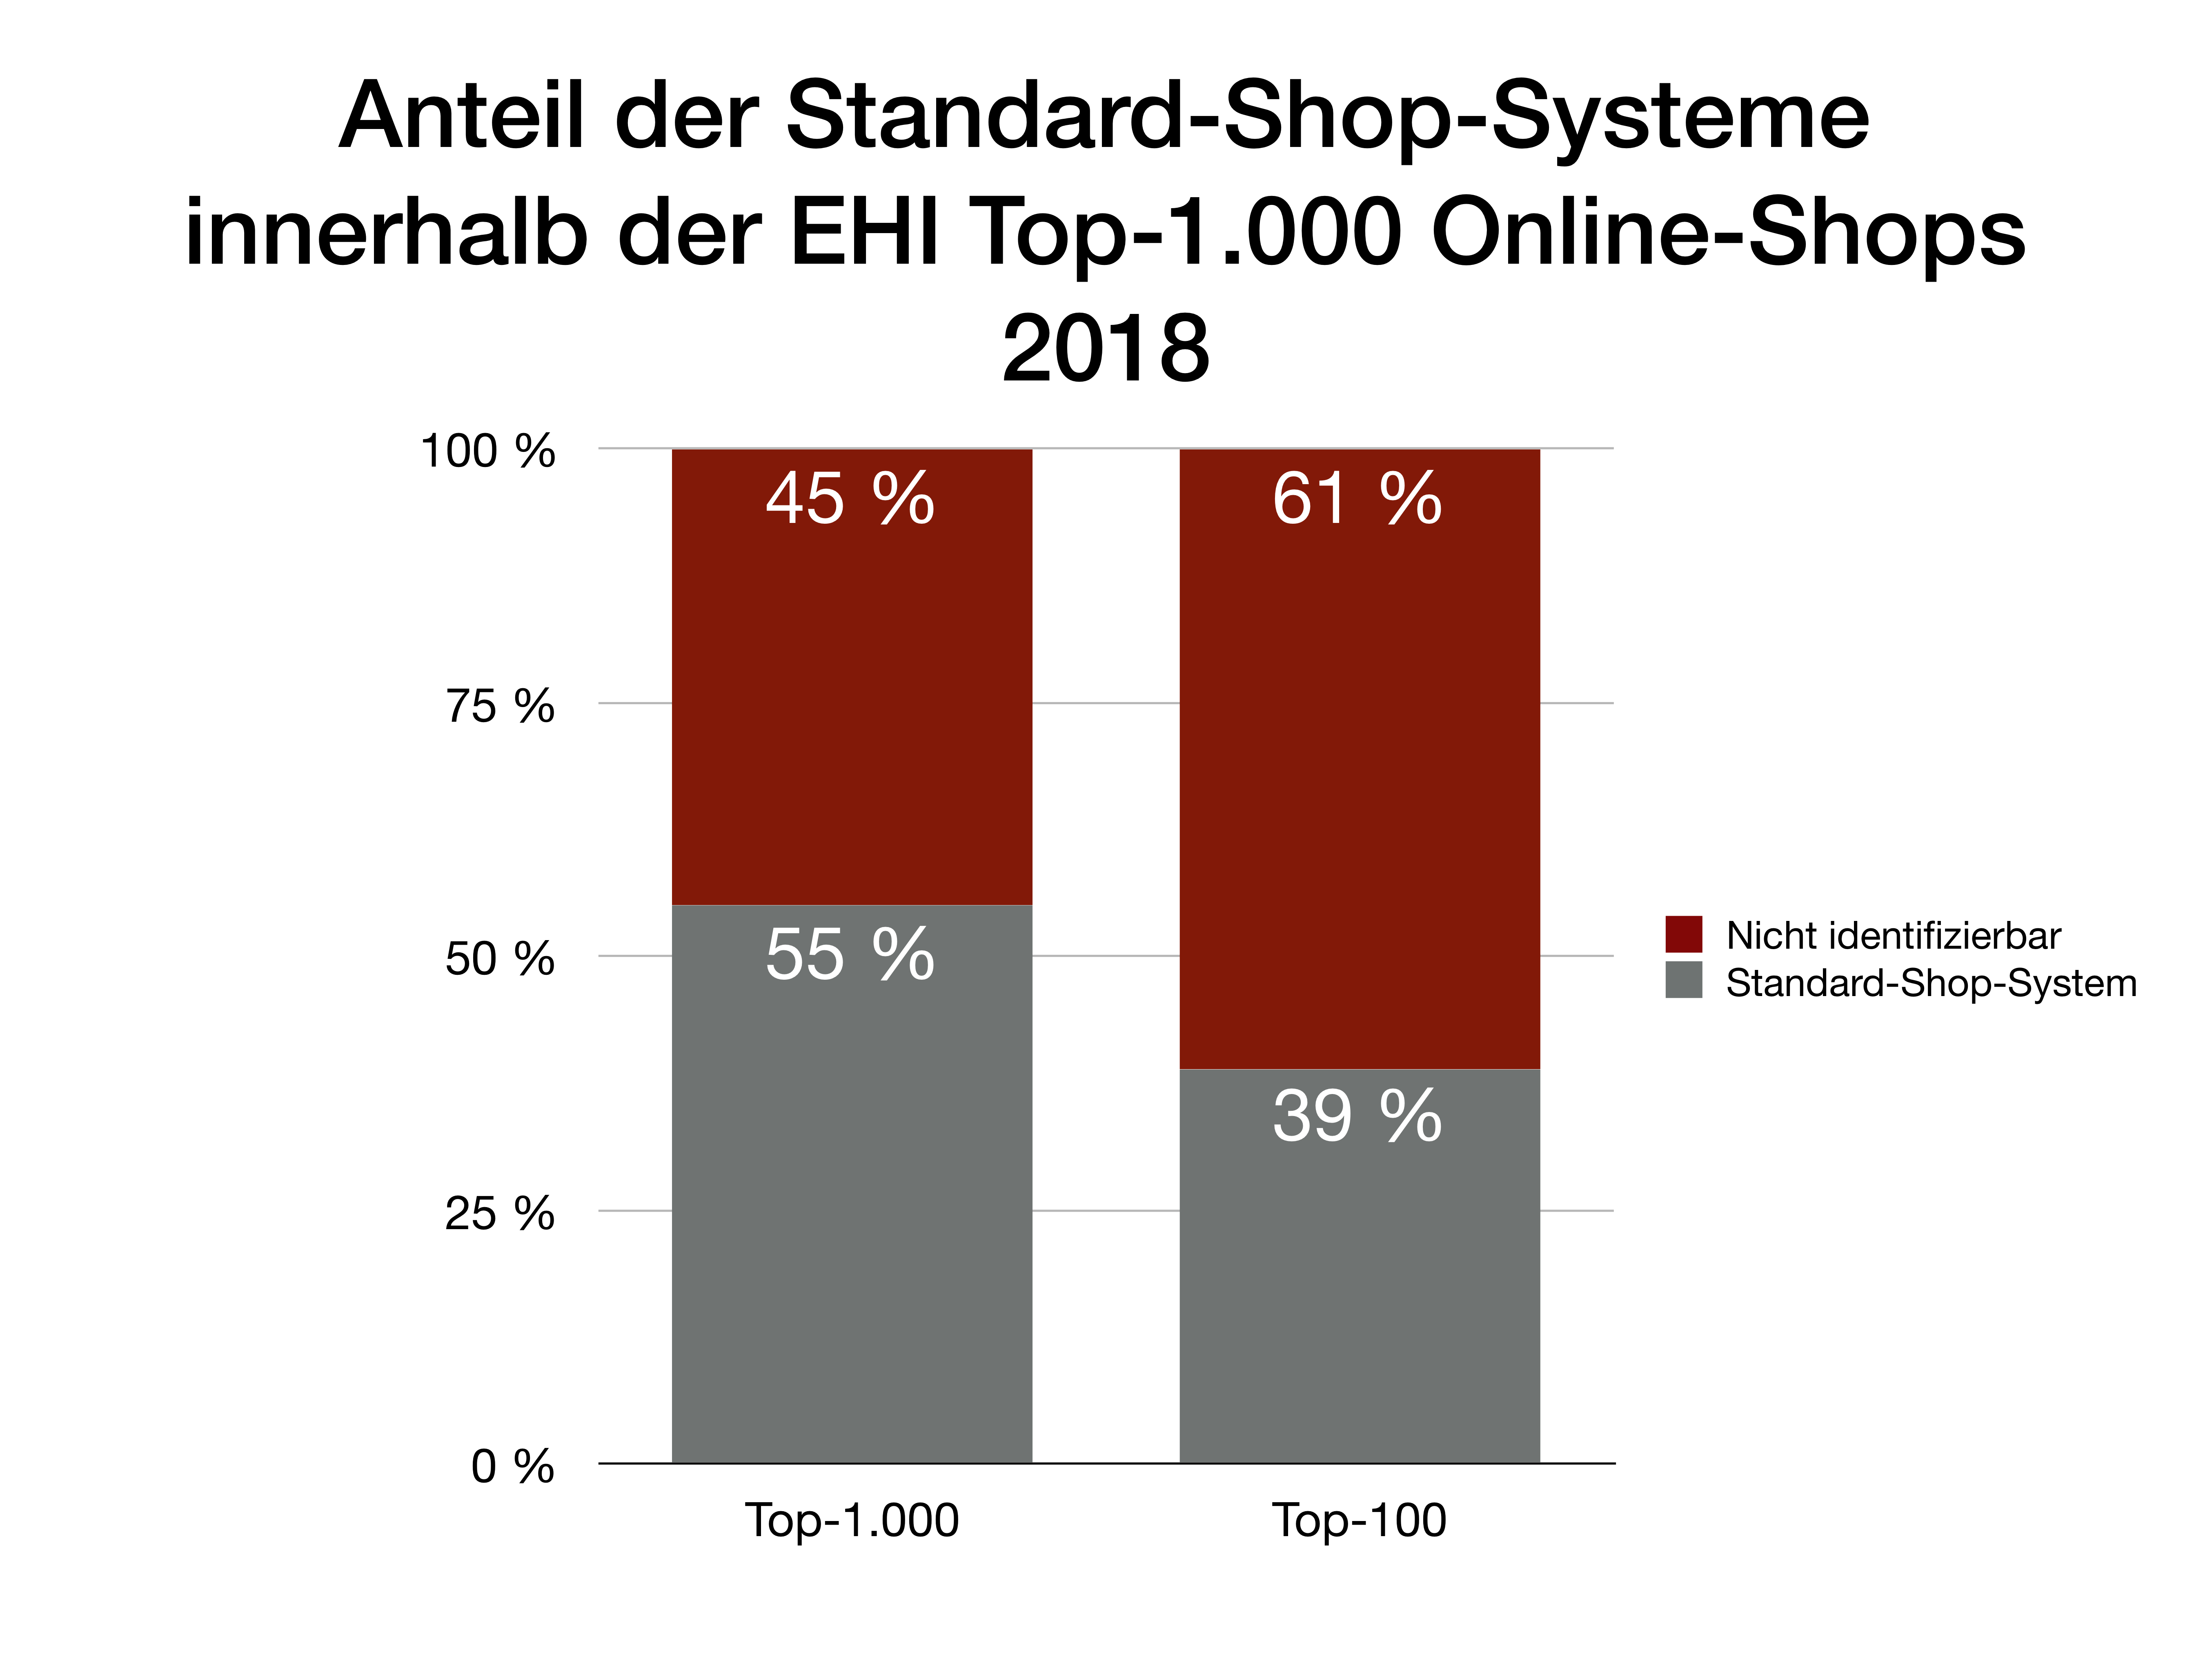 Übersicht Verteilung Shopsysteme innerhalb der Top-1000 und Top-100 Online-Shops